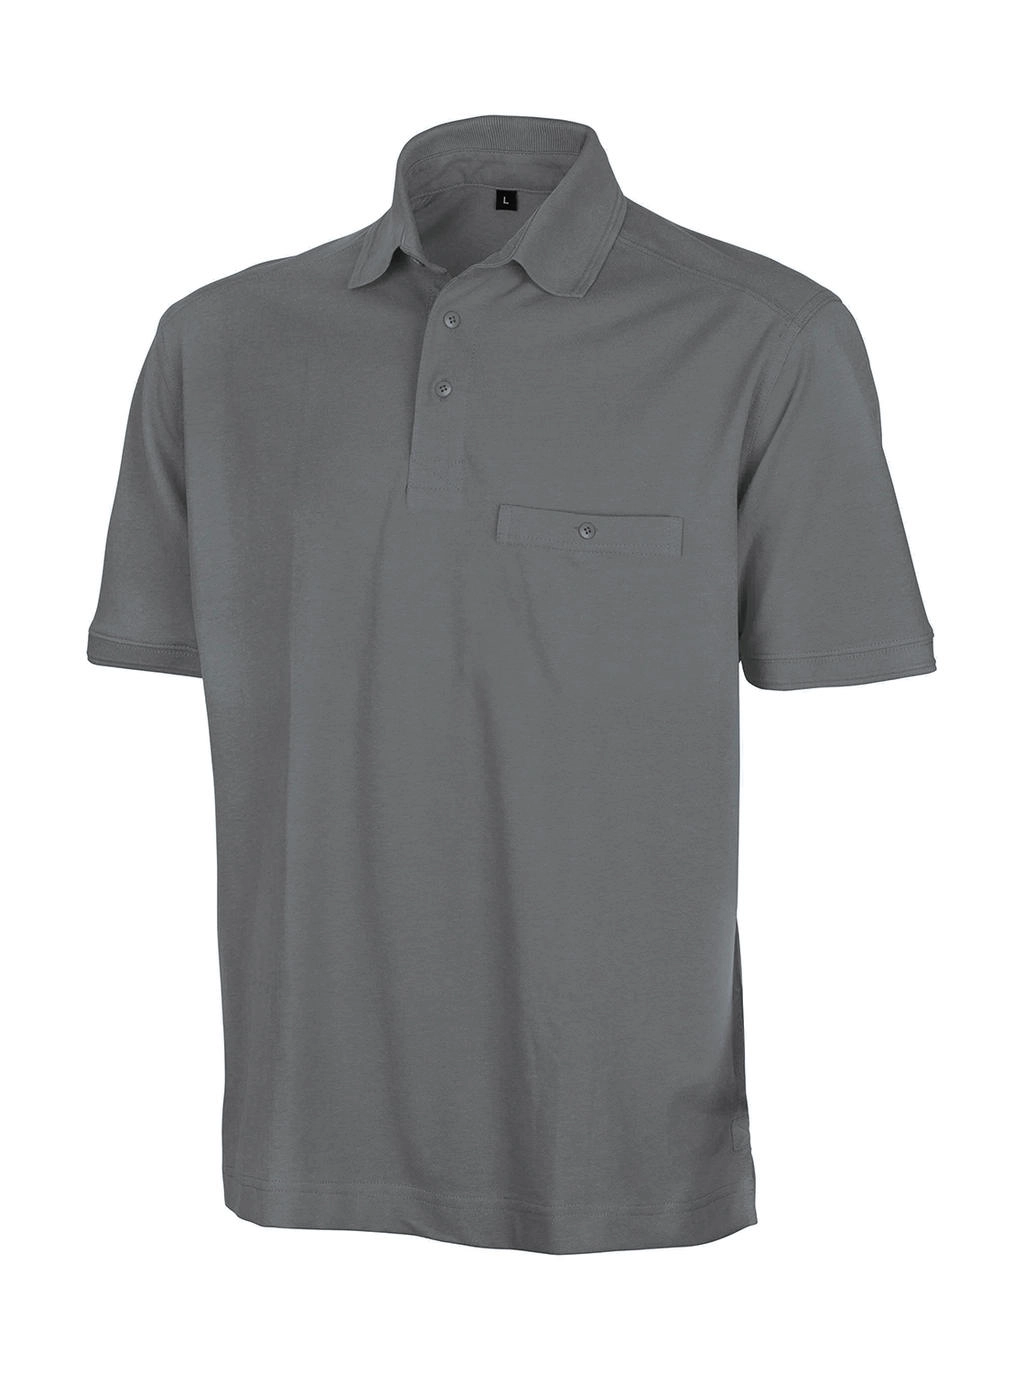 Apex Polo Shirt zum Besticken und Bedrucken in der Farbe Workguard Grey mit Ihren Logo, Schriftzug oder Motiv.